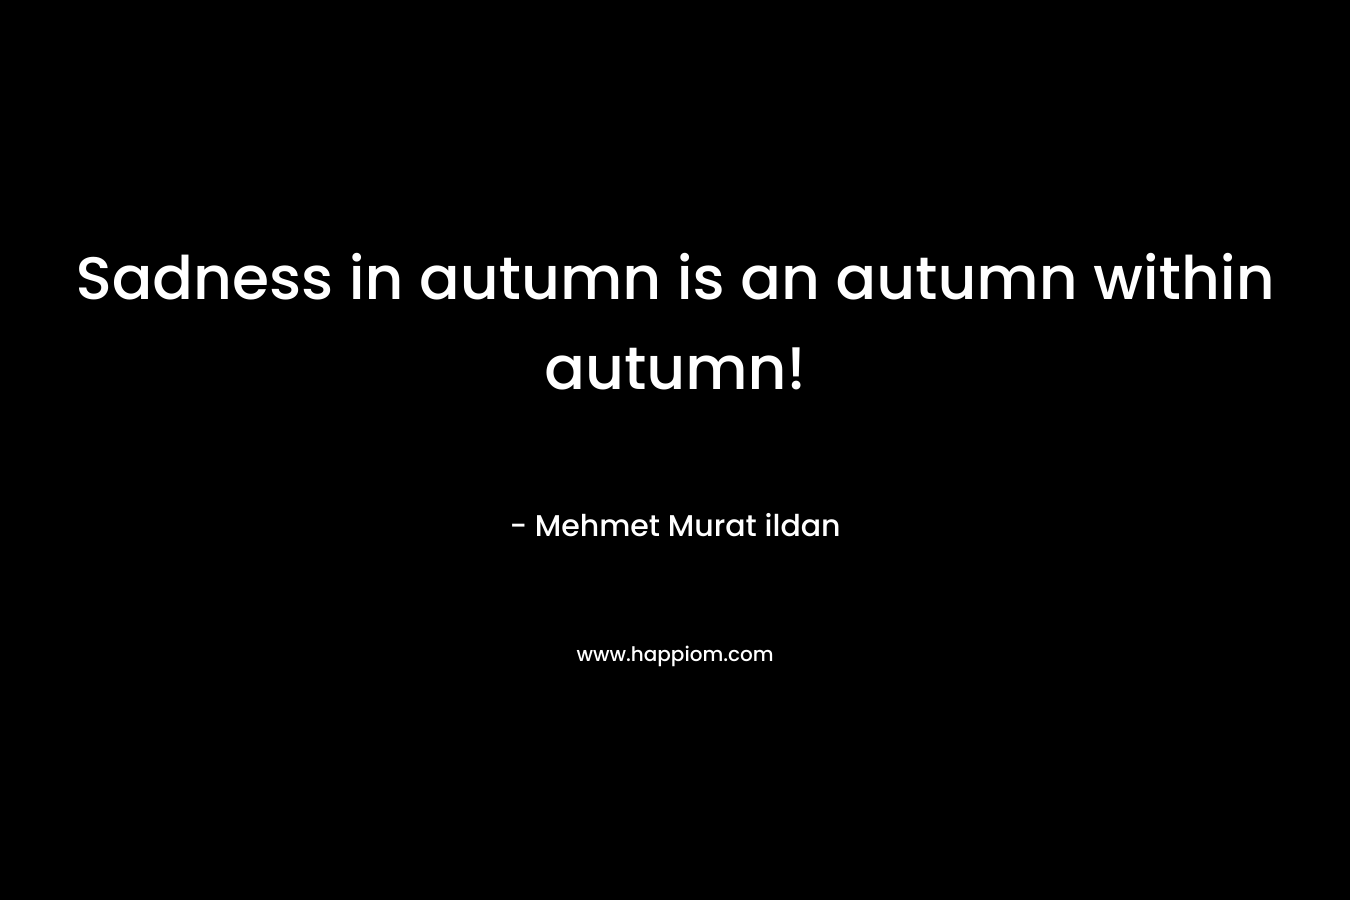 Sadness in autumn is an autumn within autumn! – Mehmet Murat ildan